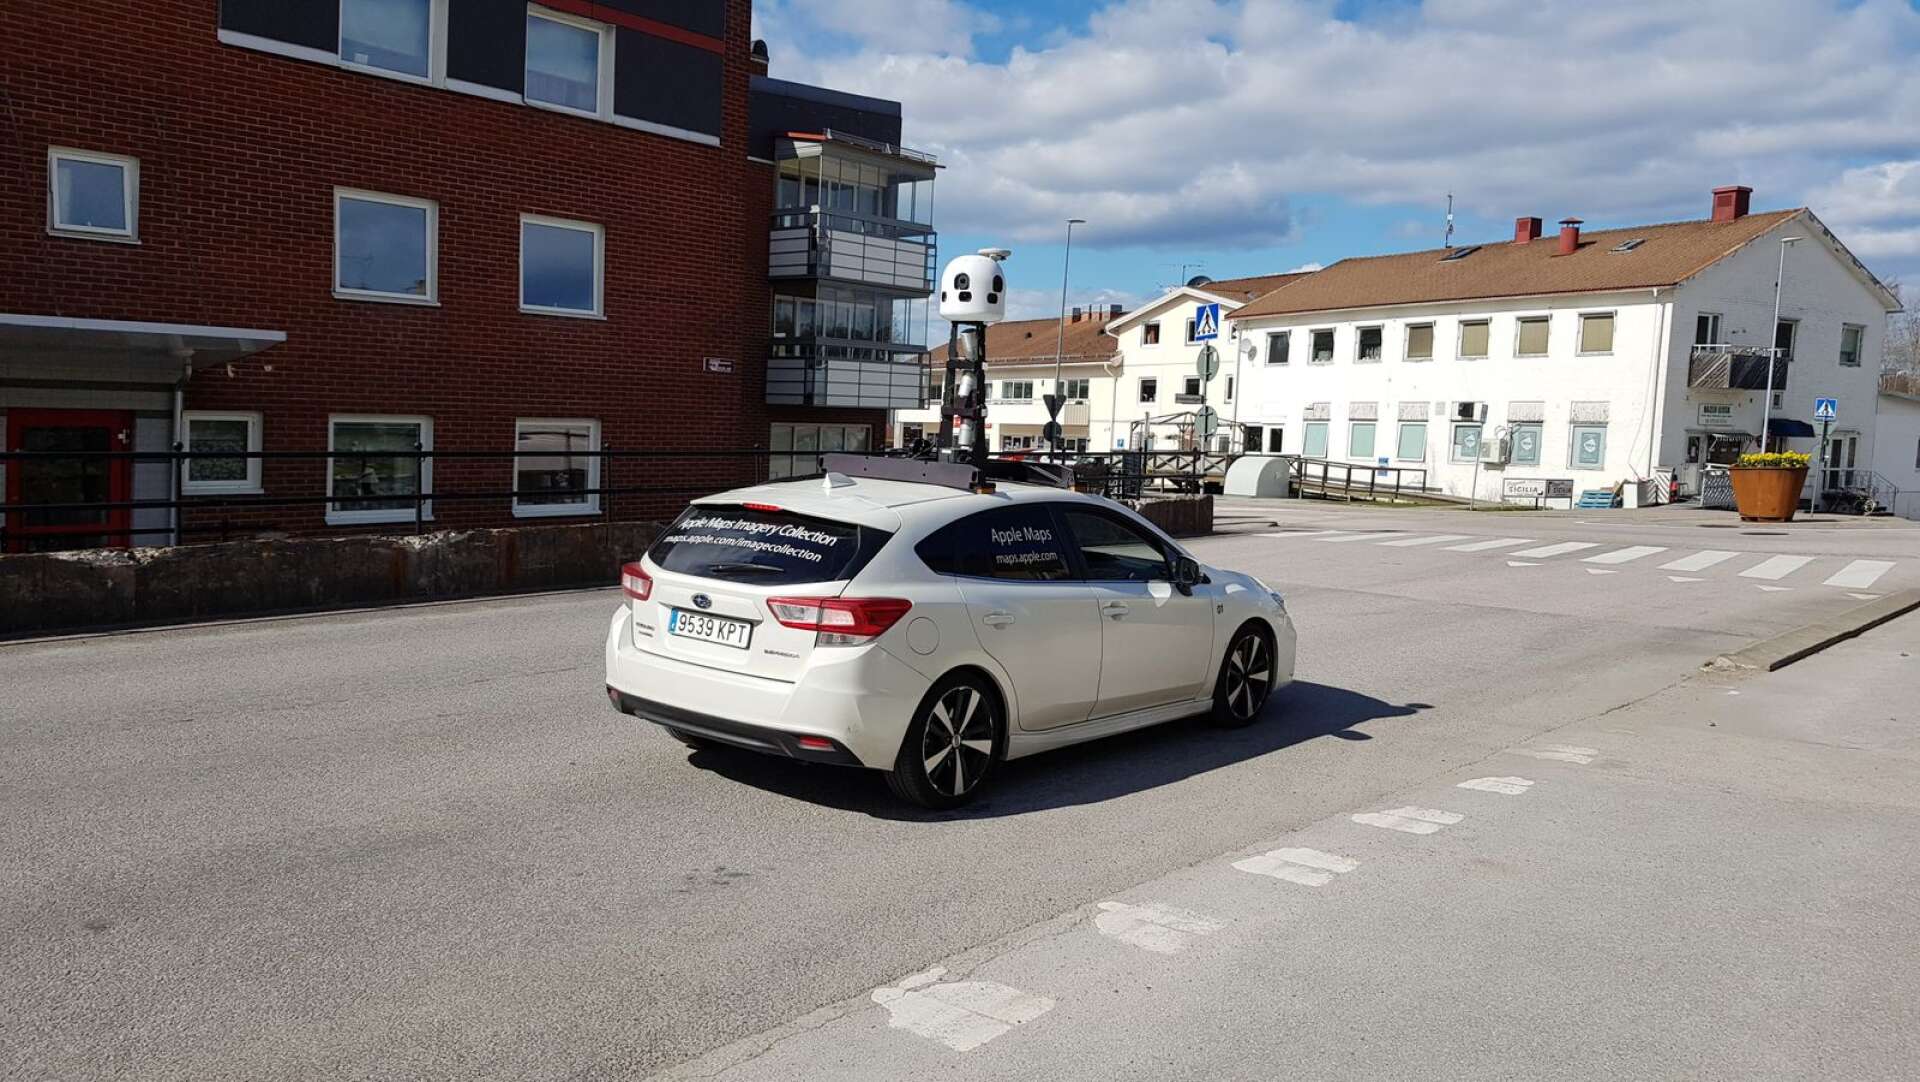 Apple maps spanskregistrerade bil kör runt med kamera i Bengtsfors.